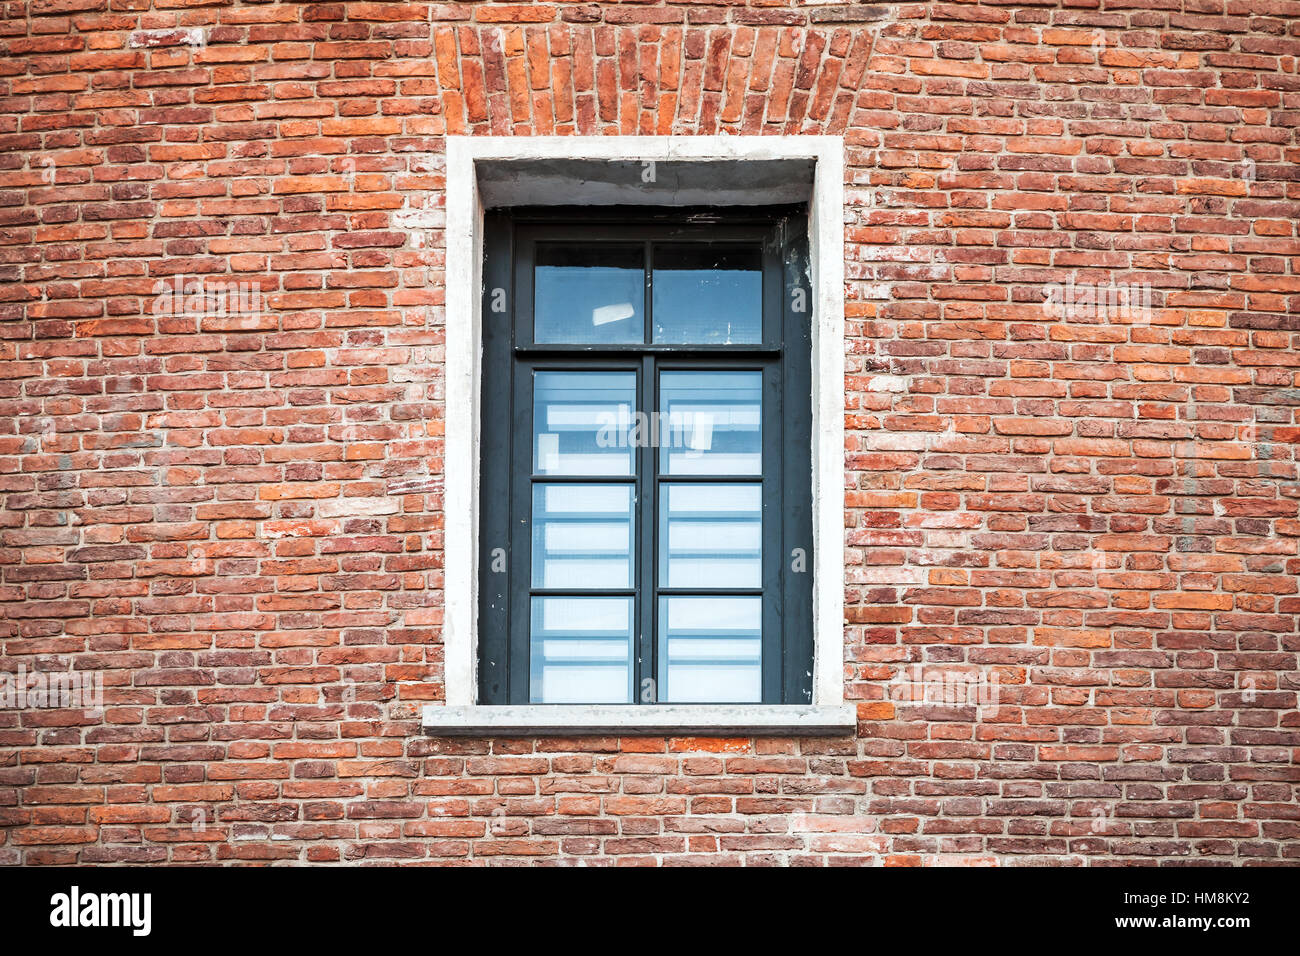 Fenster mit schwarzem Rahmen in alte Ziegelmauer Hintergrundtextur Foto Stockfoto